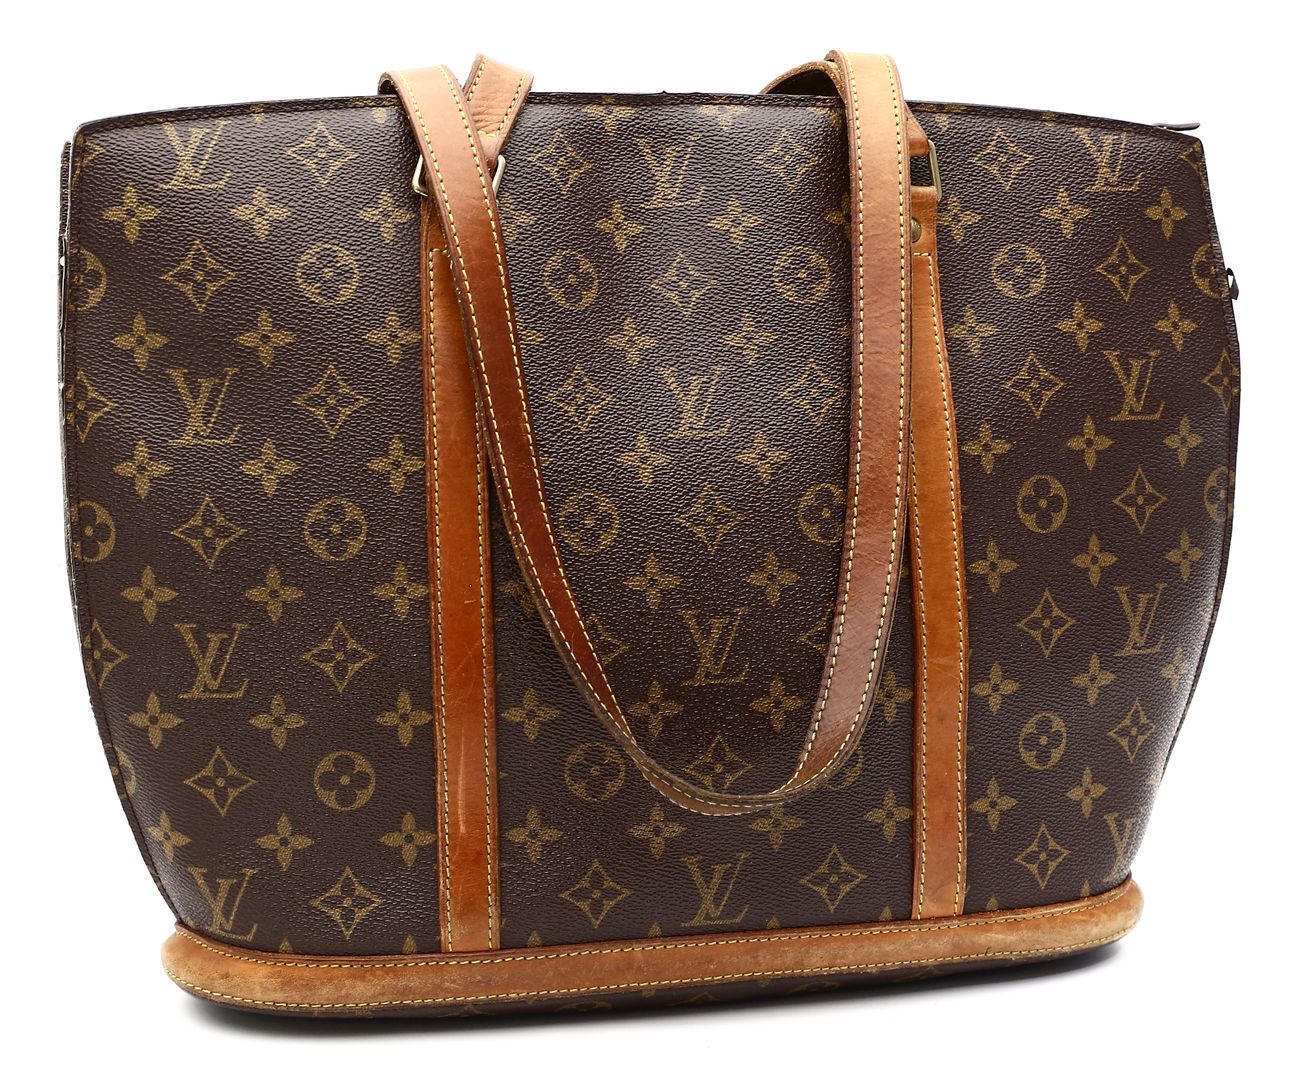 Tote Bag "Babylone", Louis Vuitton.